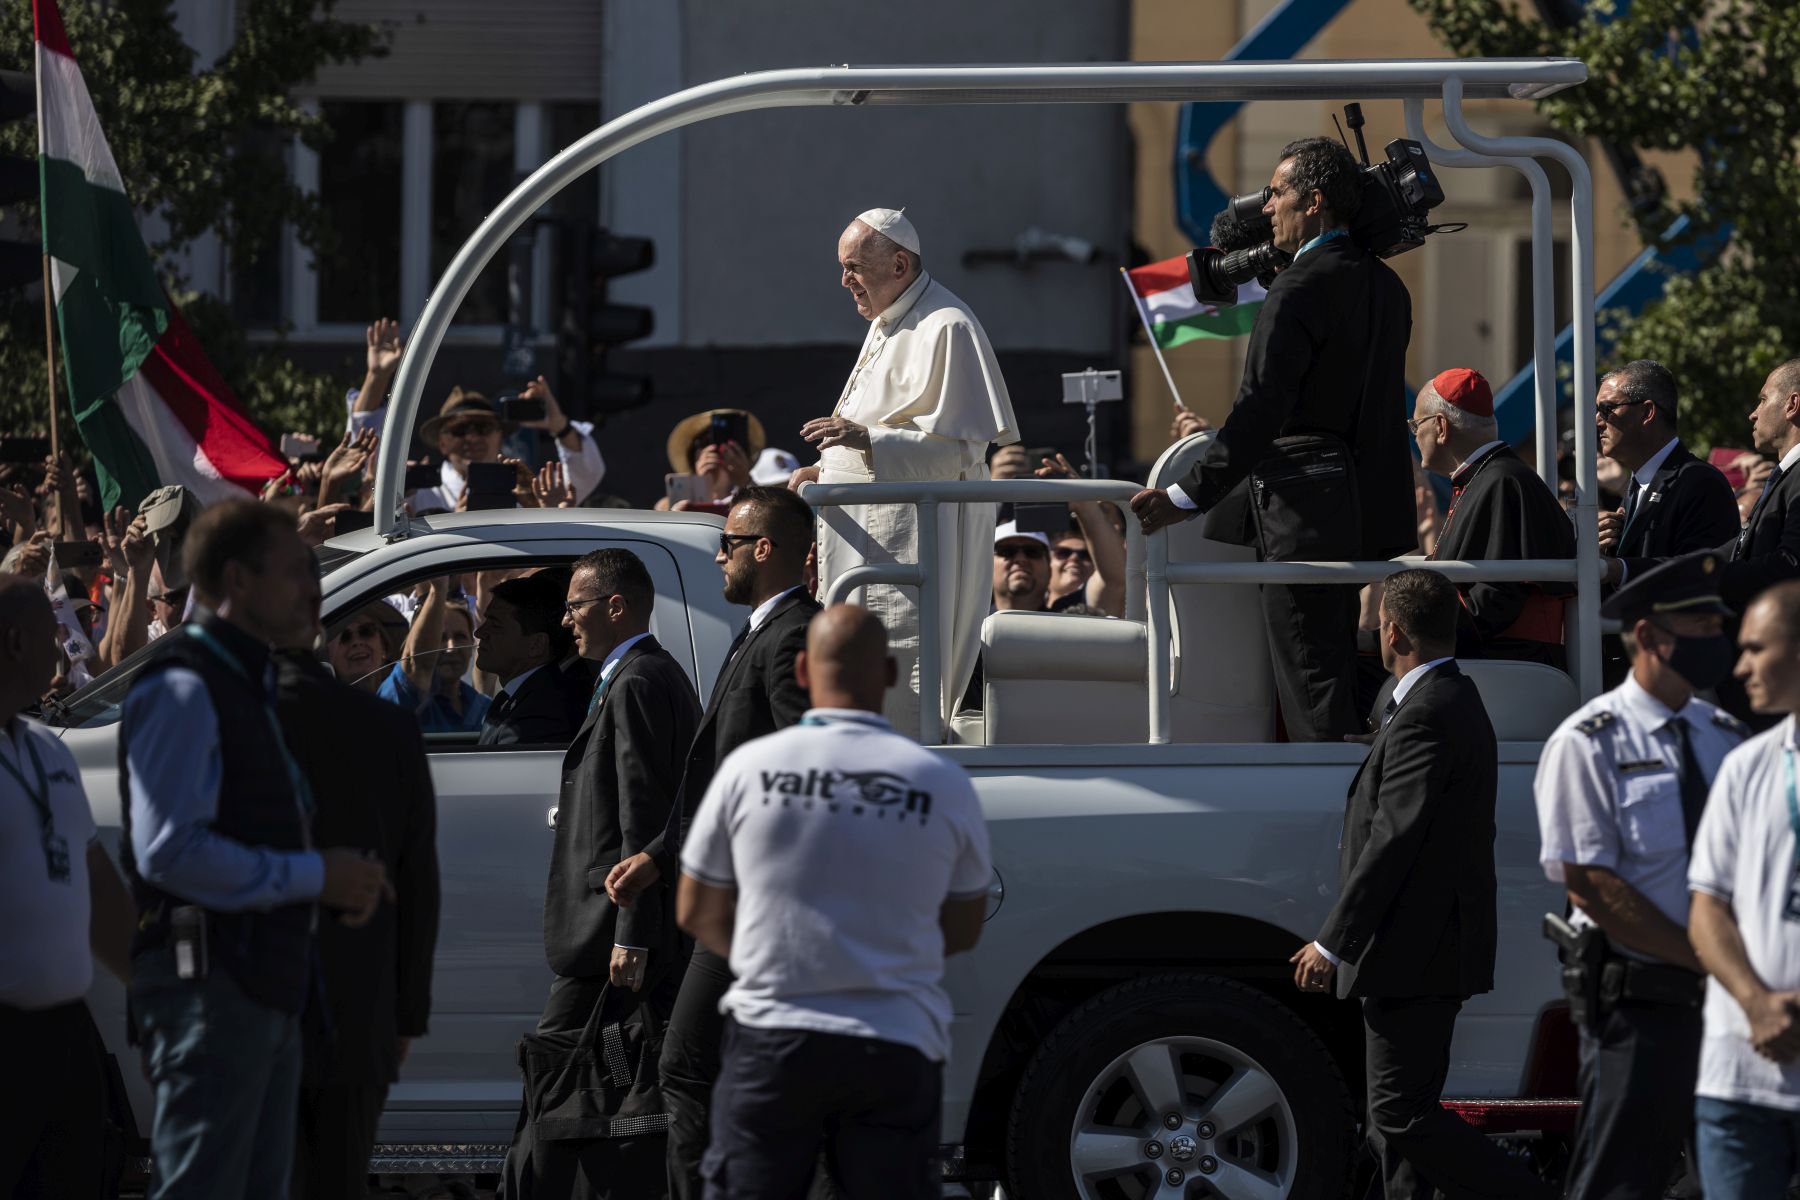 Jövőre újra Magyarországra látogathat Ferenc pápa